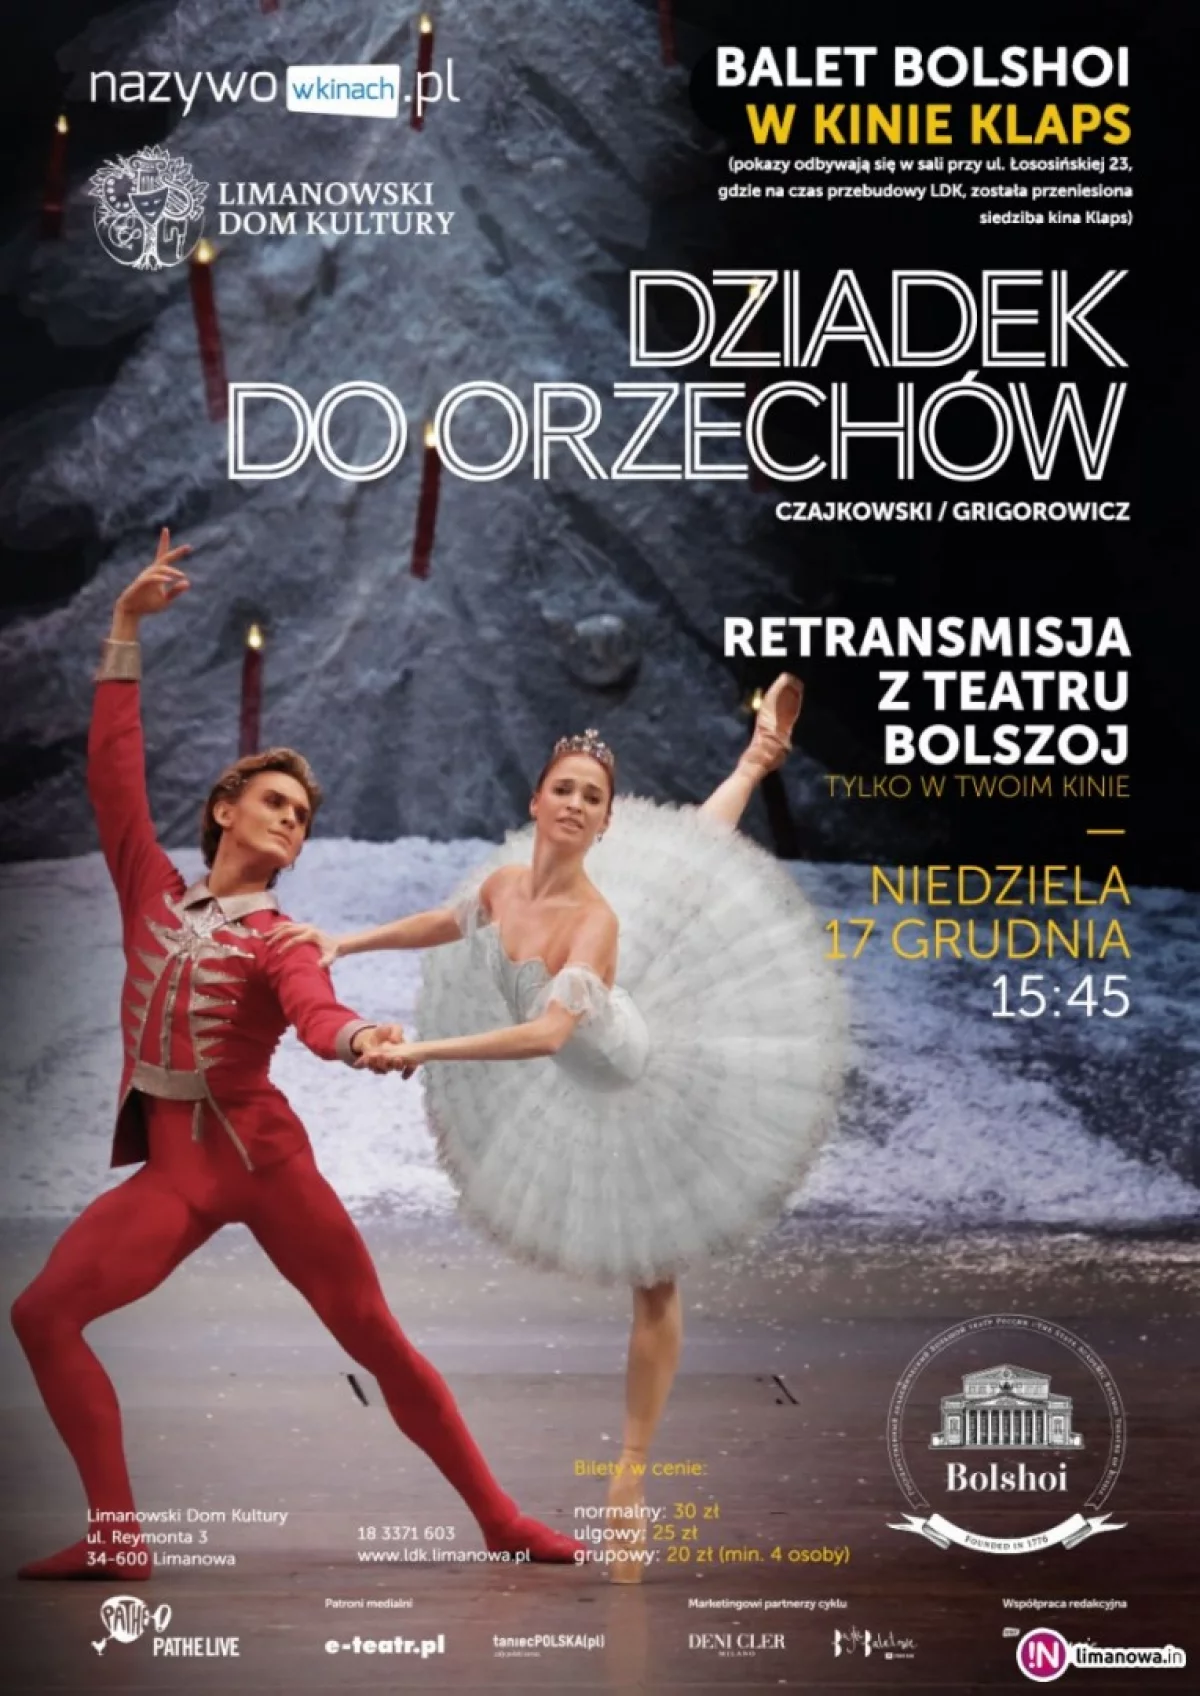 'Dziadek do orzechów' - 17 grudnia zapraszamy na retransmisję z Teatru Bolshoi w Moskwie